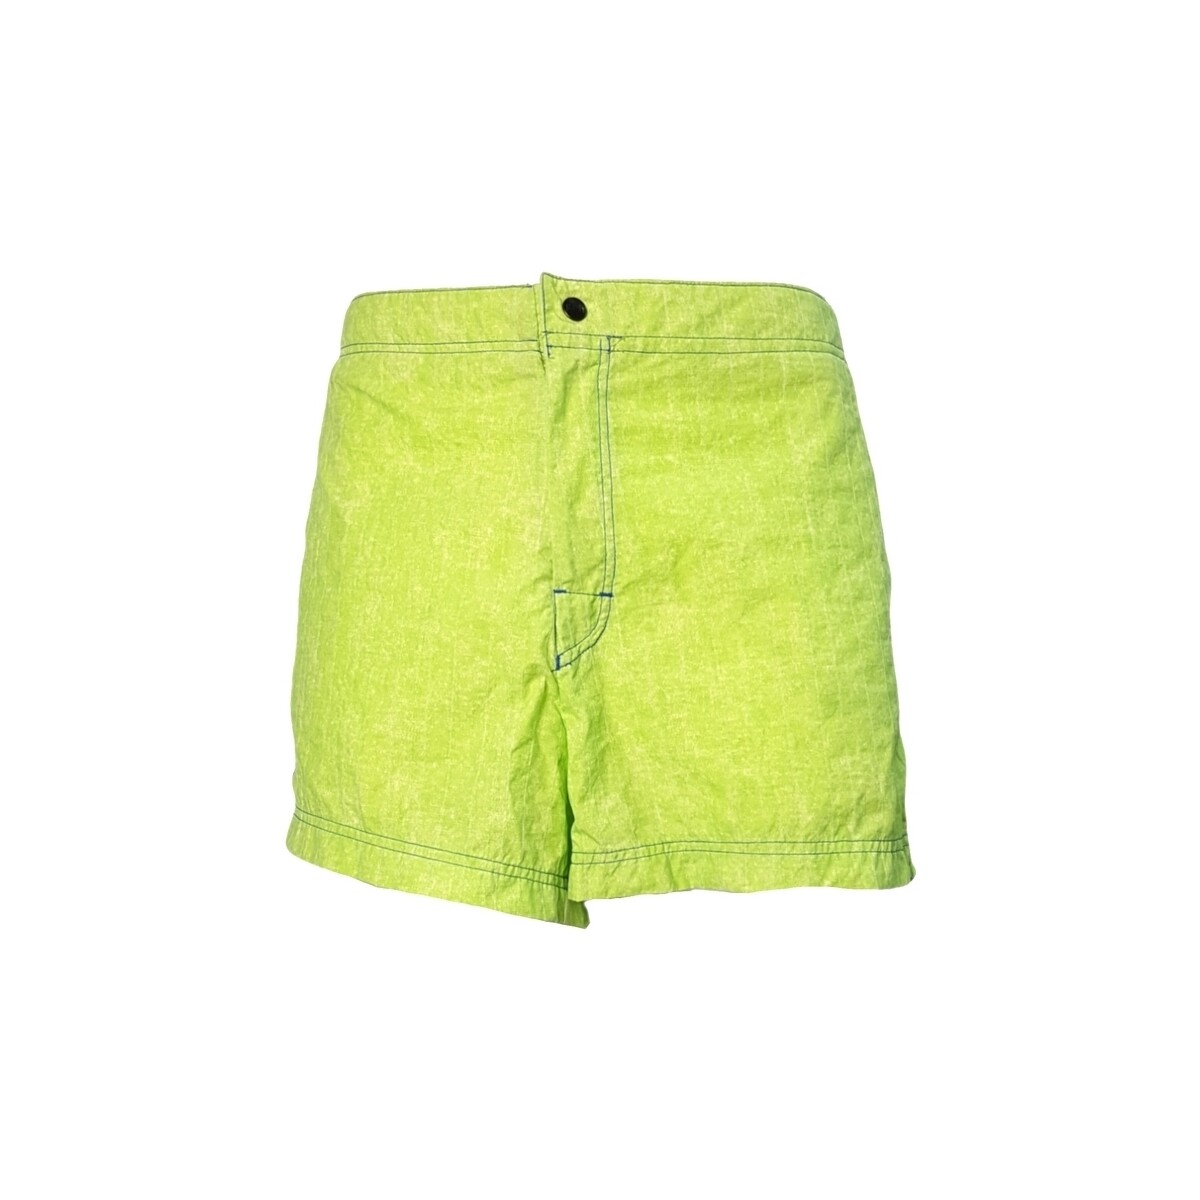 Vêtements Homme Maillots / Shorts de bain Parah U877 3270 Vert